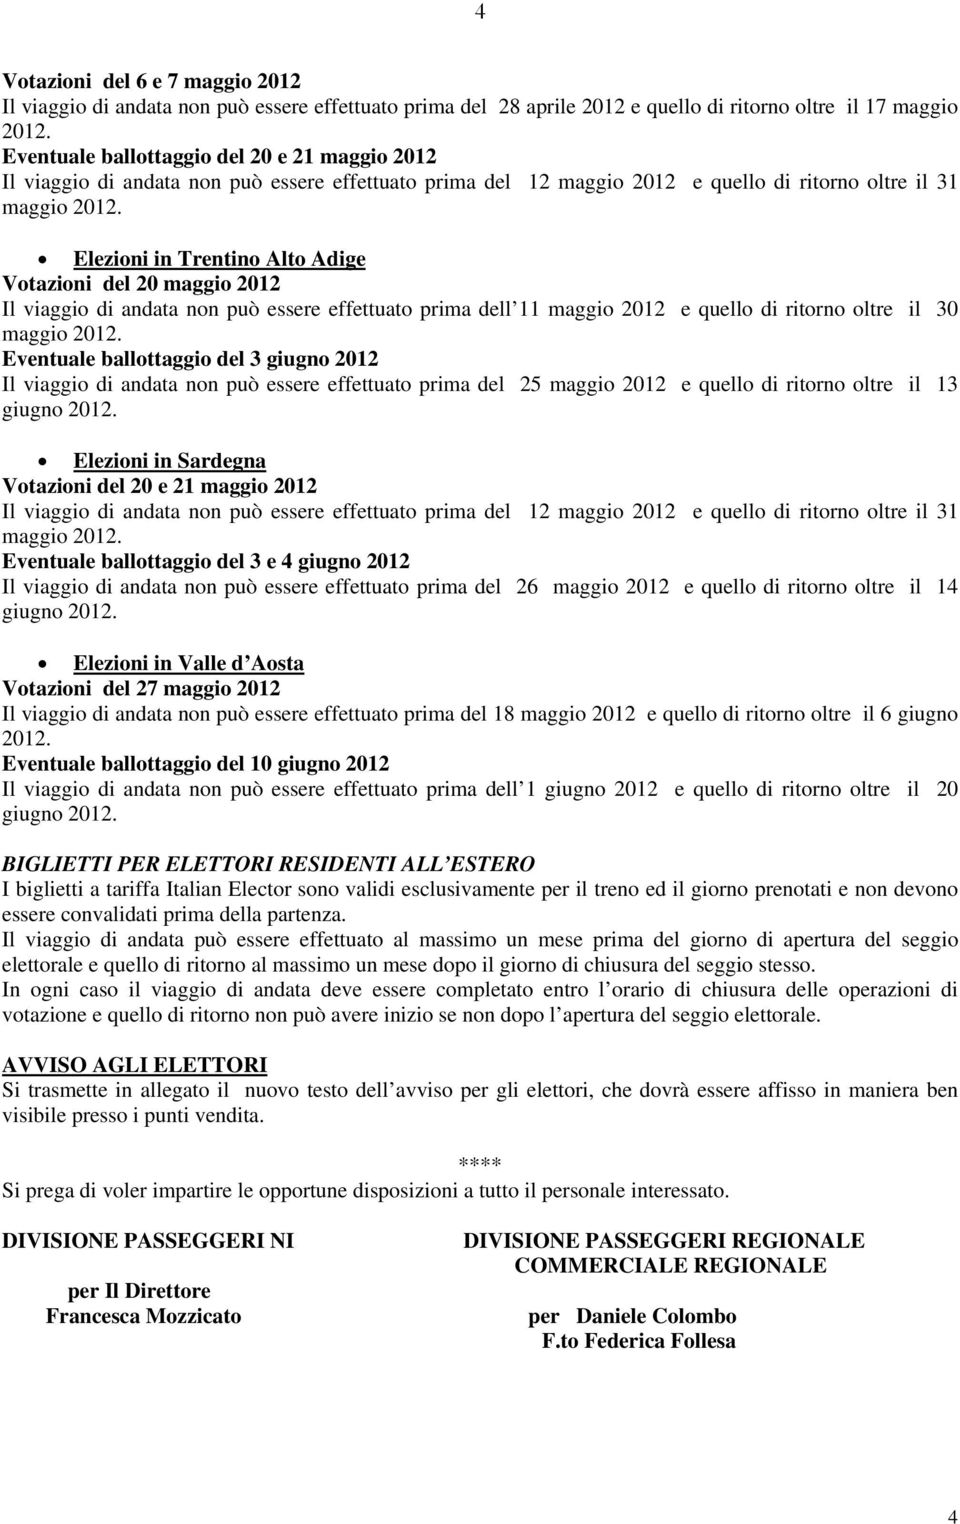 Elezioni in Trentino Alto Adige Votazioni del 20 maggio 2012 Il viaggio di andata non può essere effettuato prima dell 11 maggio 2012 e quello di ritorno oltre il 30 maggio 2012.